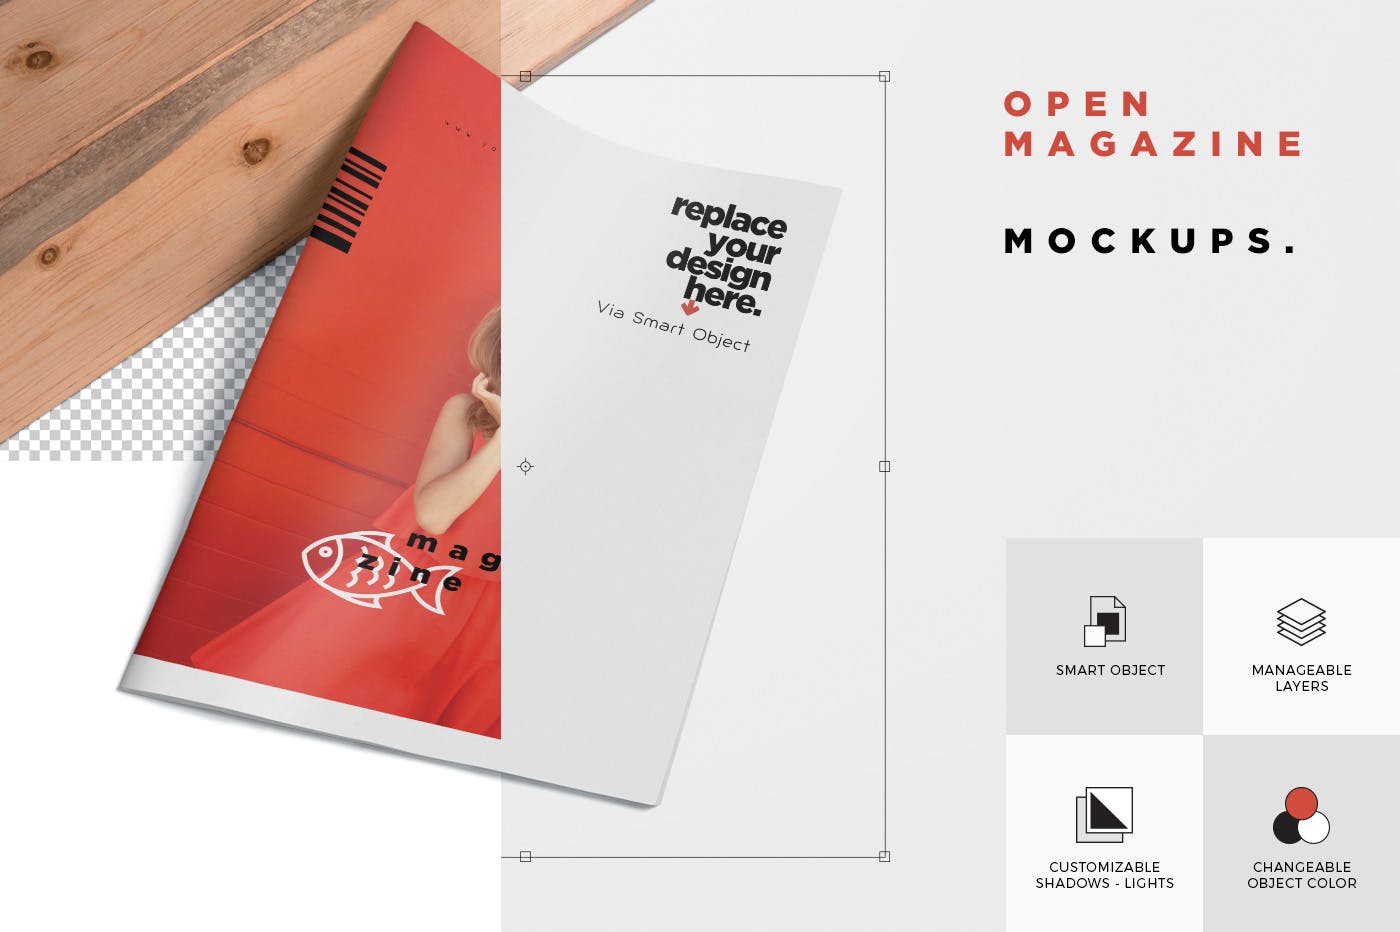 杂志广告图片设计印刷效果图样机 Open Magazine Mockups for Ad Designs插图6